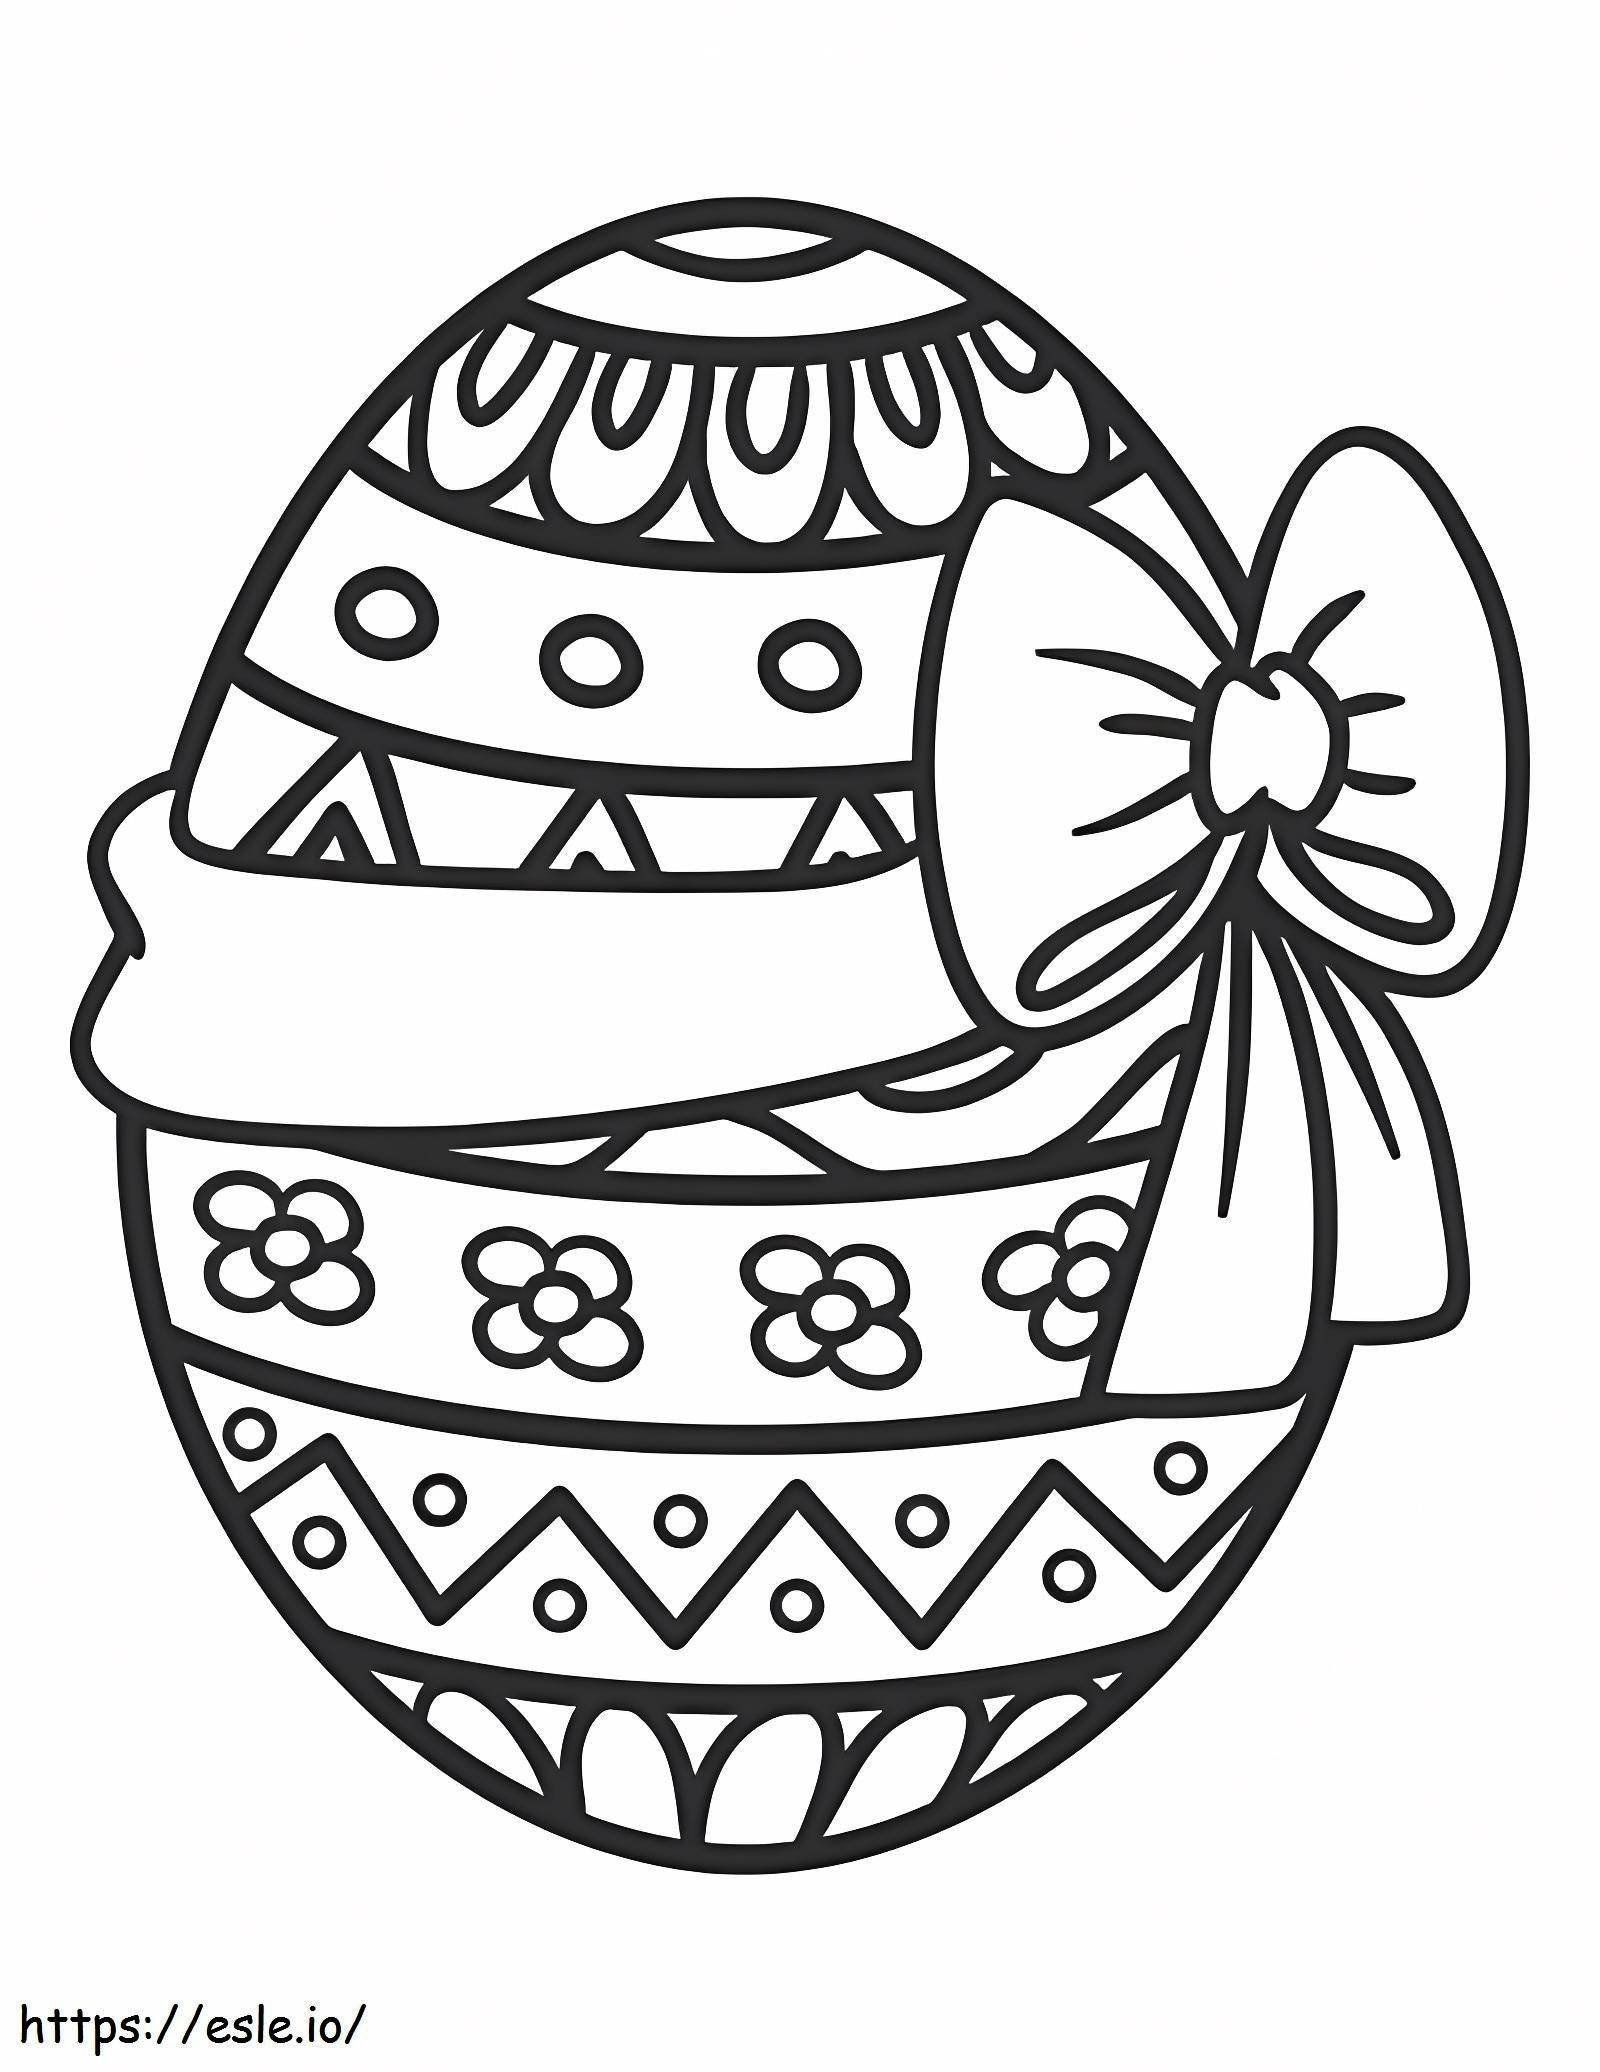 Ovo de Páscoa com Laço para colorir